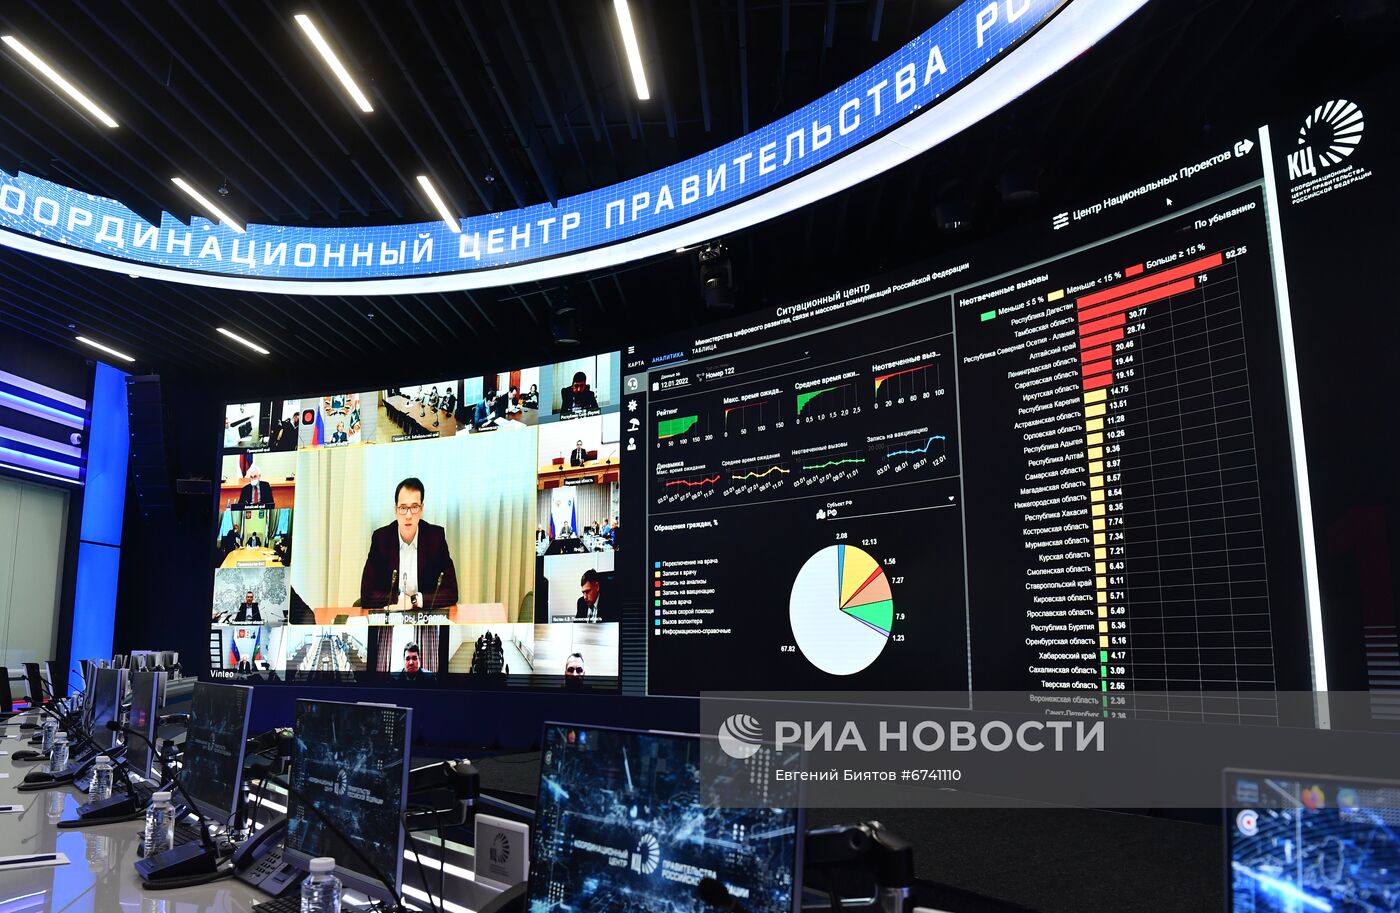 Вице-премьер правительства РФ Д. Чернышенко провел совещание по вопросу работы единой службы 122